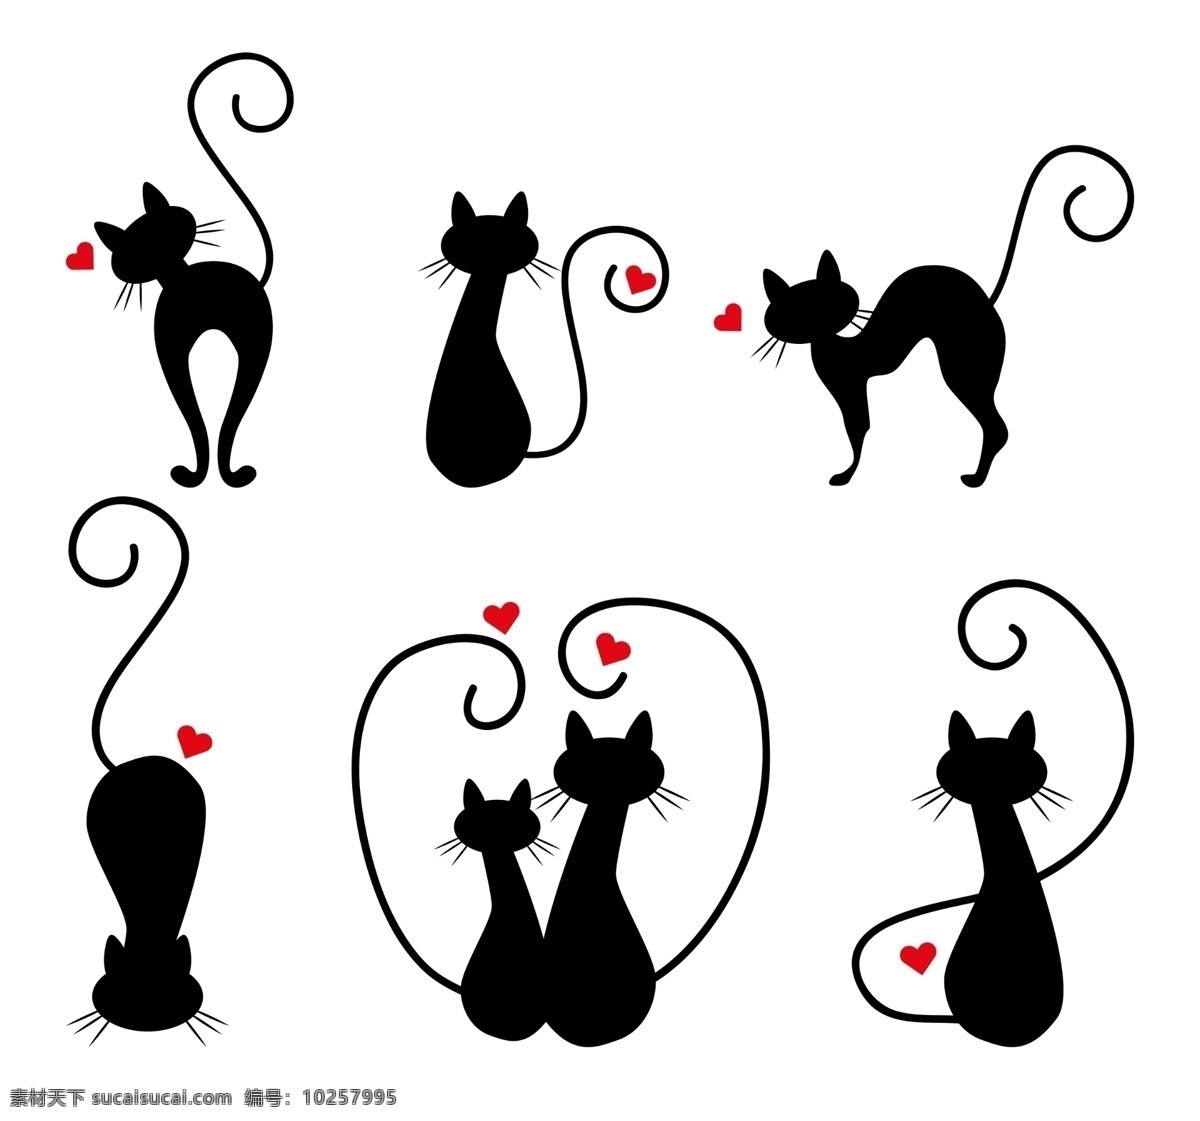 猫剪影 矢量猫 黑色猫 站立的猫 行走的猫 动物猫 卡通猫 猫黑色剪影